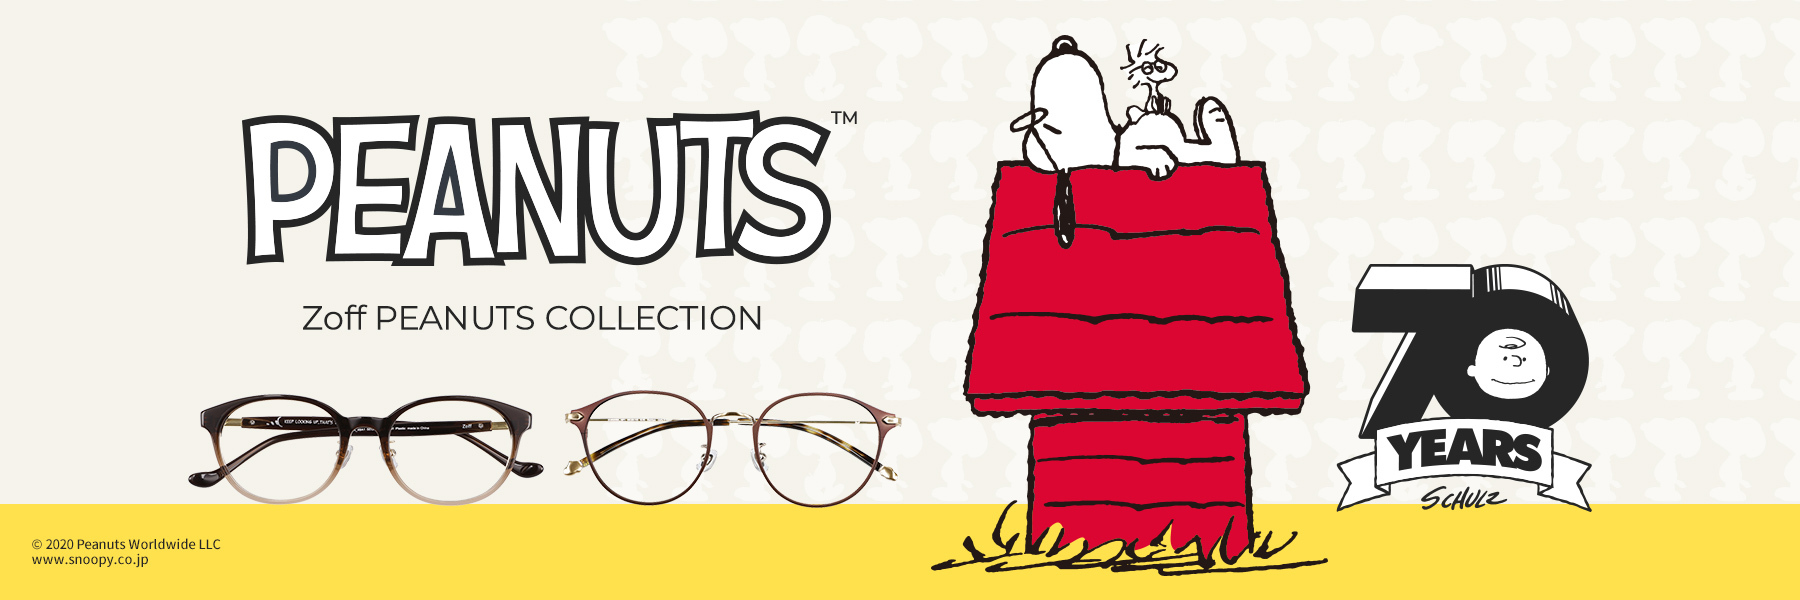 Zoff Peanuts Collection 全26種の先行予約受付開始 スヌーピーやチャーリー ブラウンたちのメガネのほかメガネ拭き ポーチ メガネケース トラベル Watch